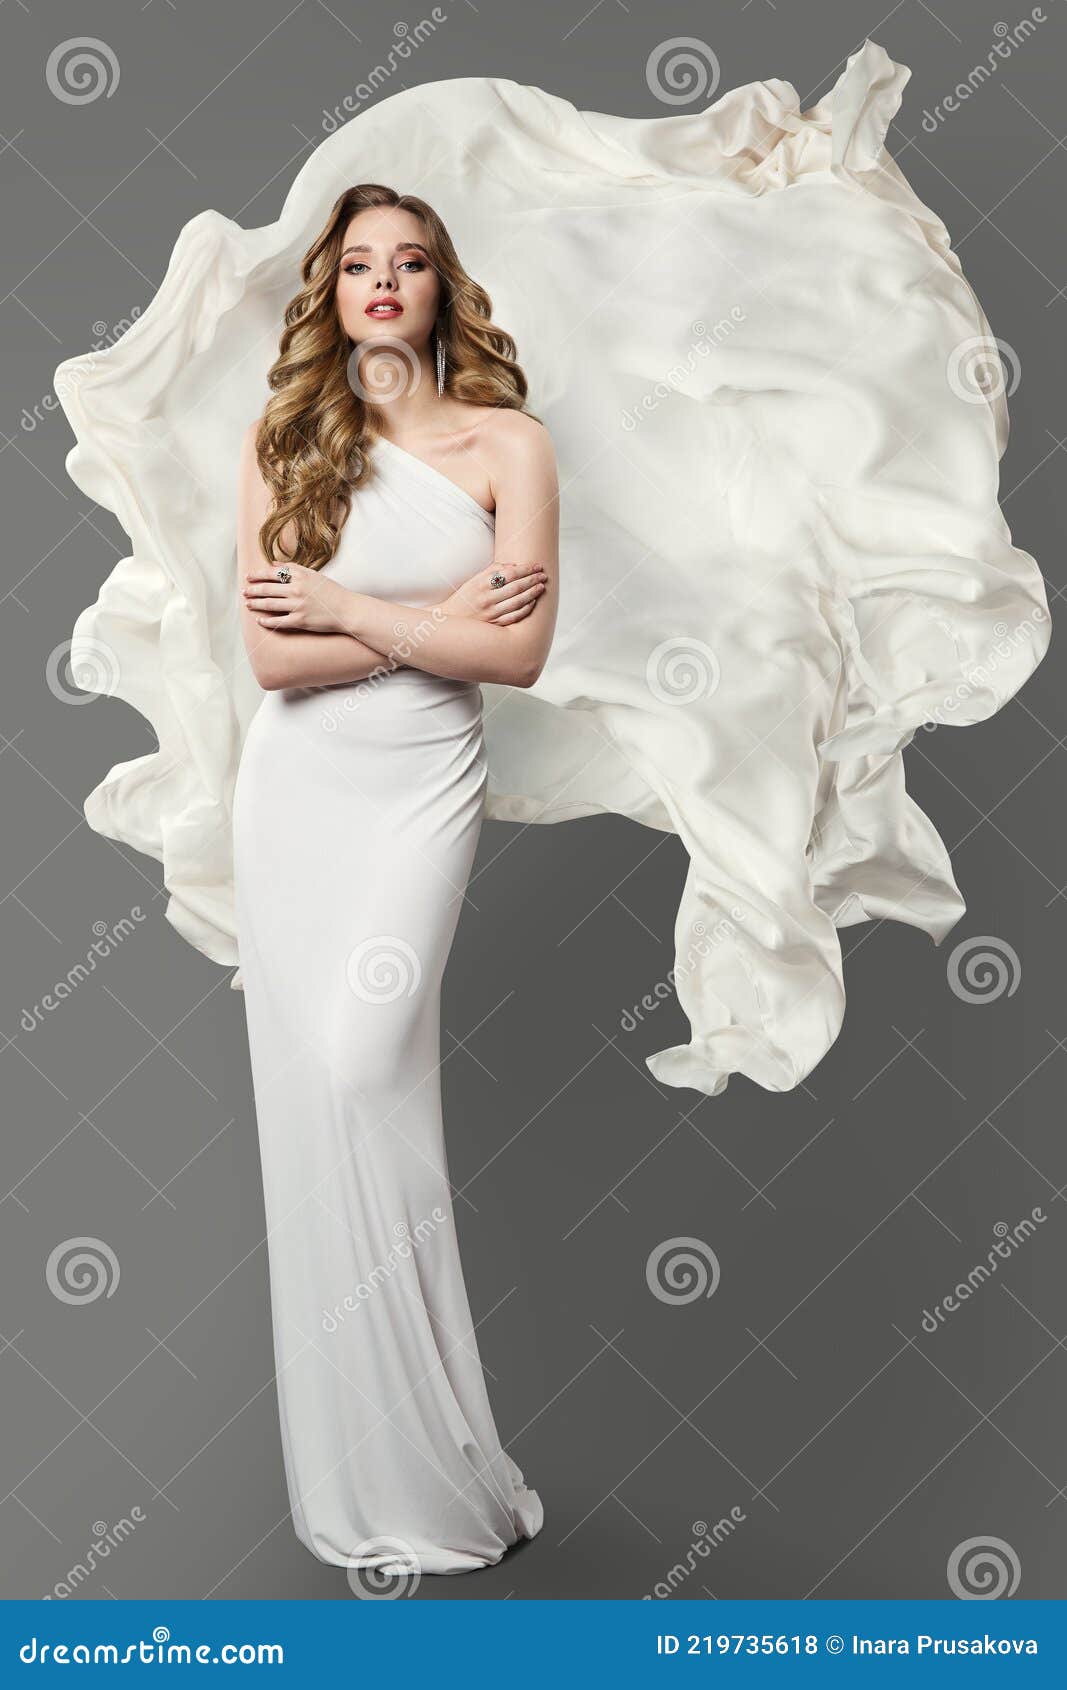 White Dress Stock Photography | CartoonDealer.com #40904156